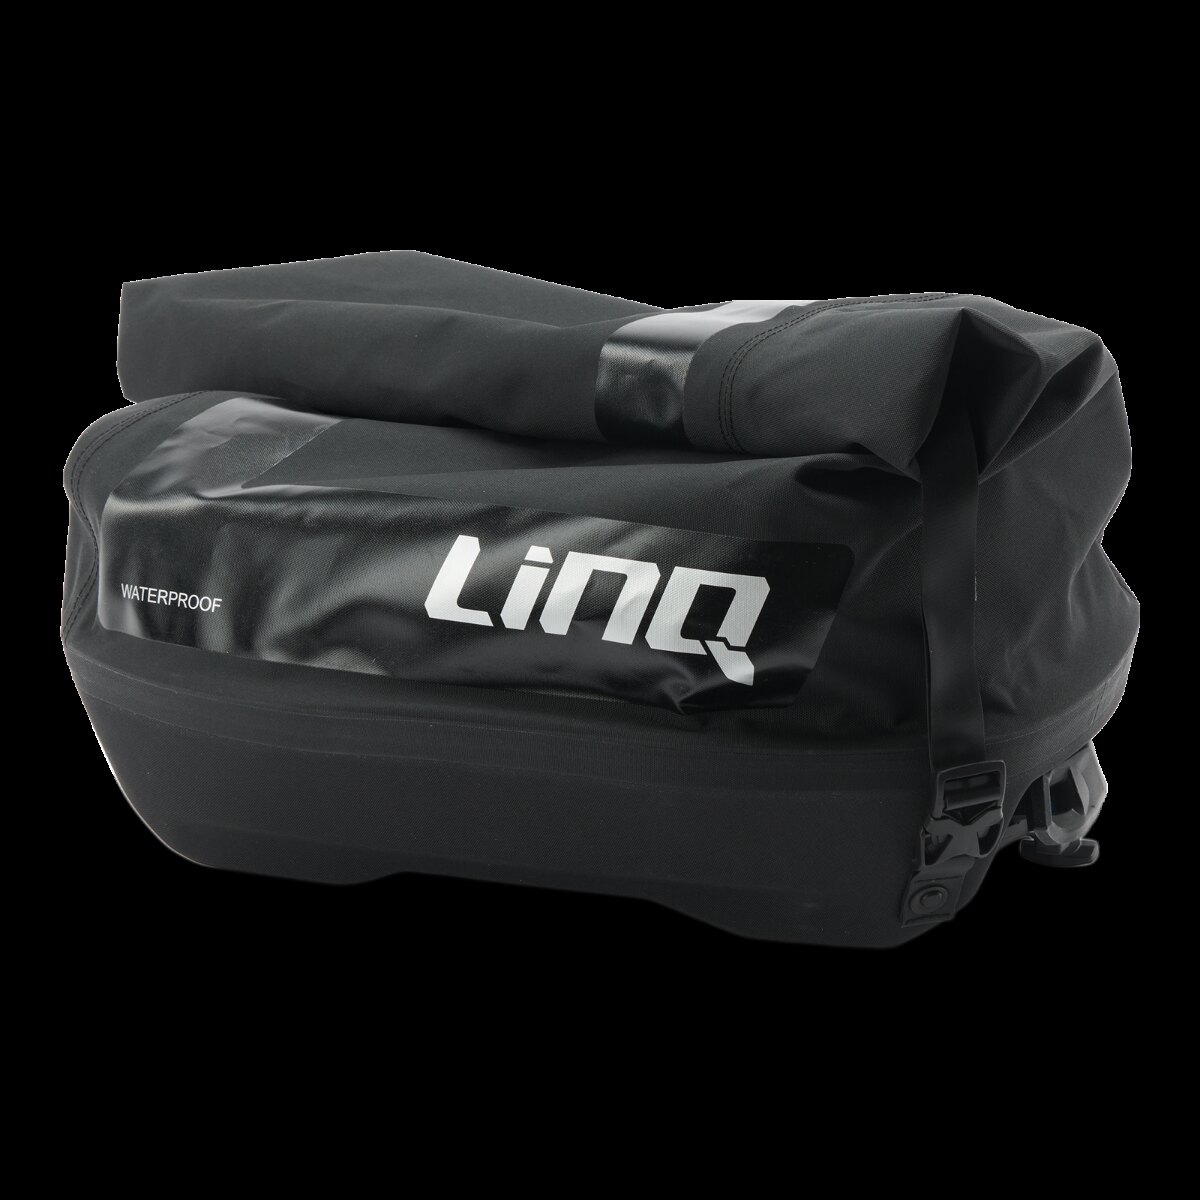 LinQ Roll top Waterproof Bag 40 L (10.6 US Gal)